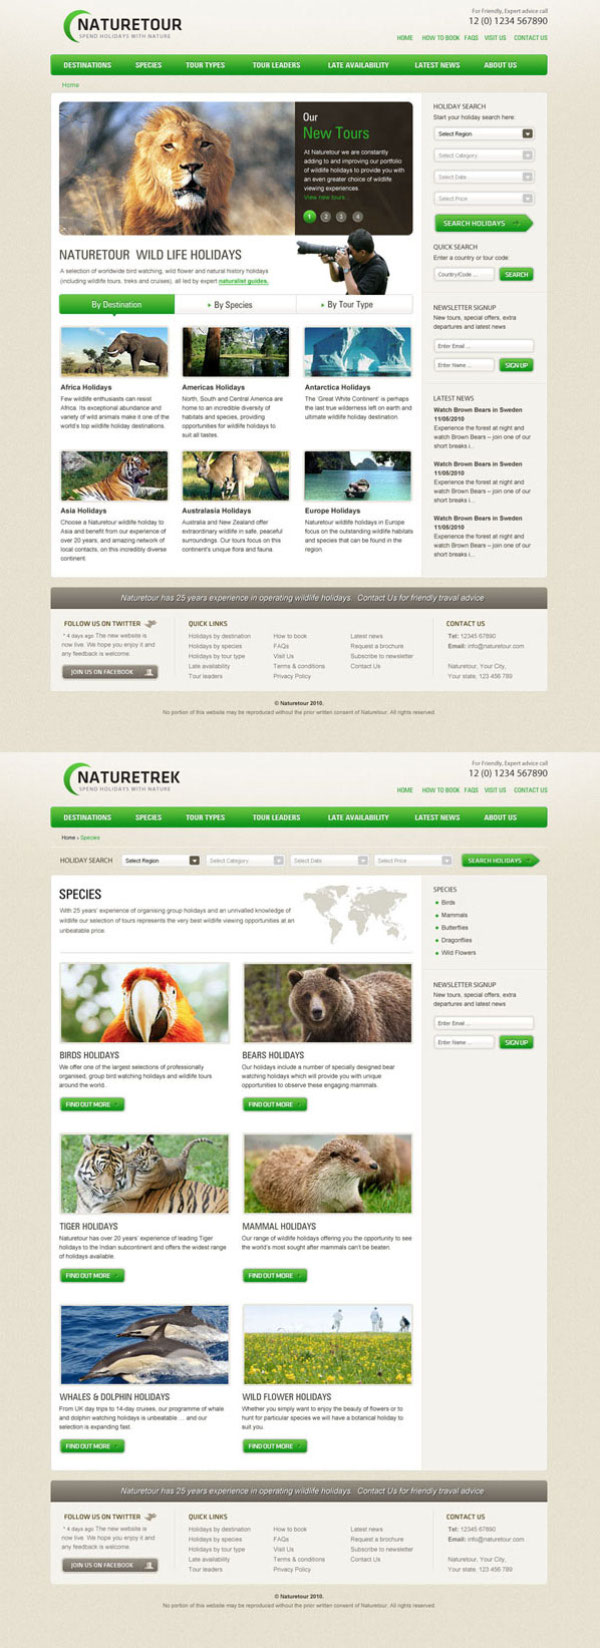 Version von der Tierwelt Web Templates Psd layered material